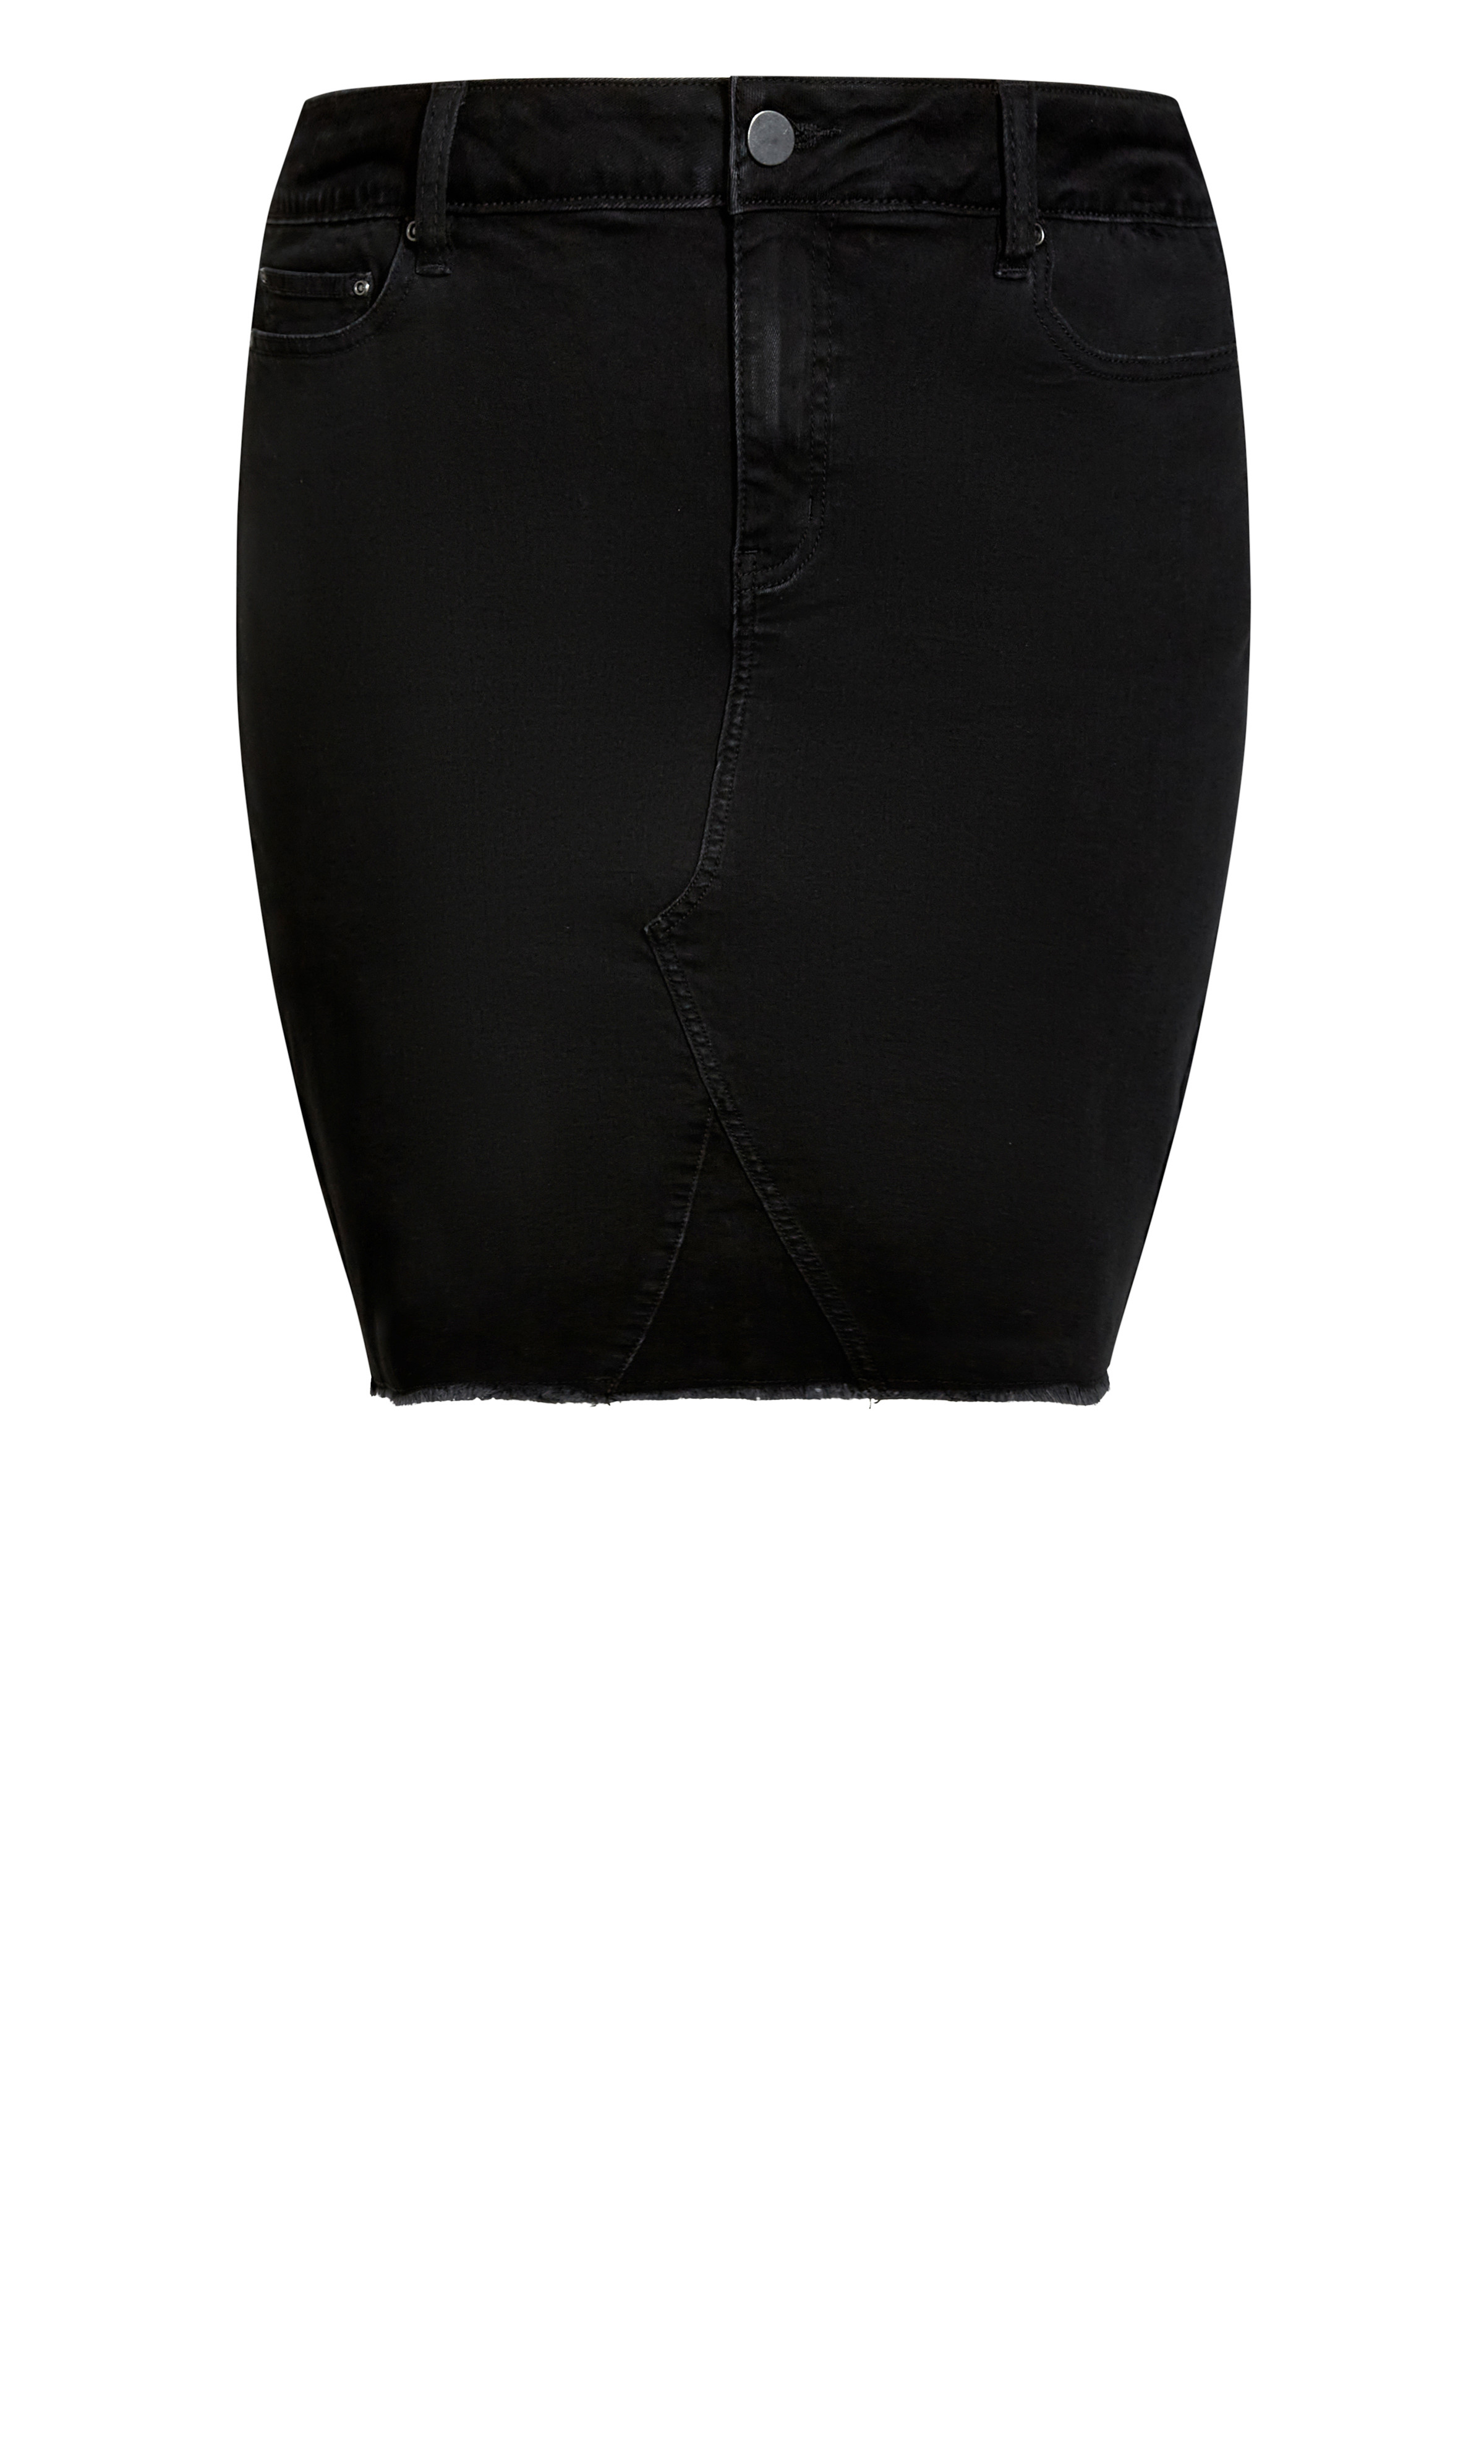 Women's Plus Size Black Denim Stretch Skirt